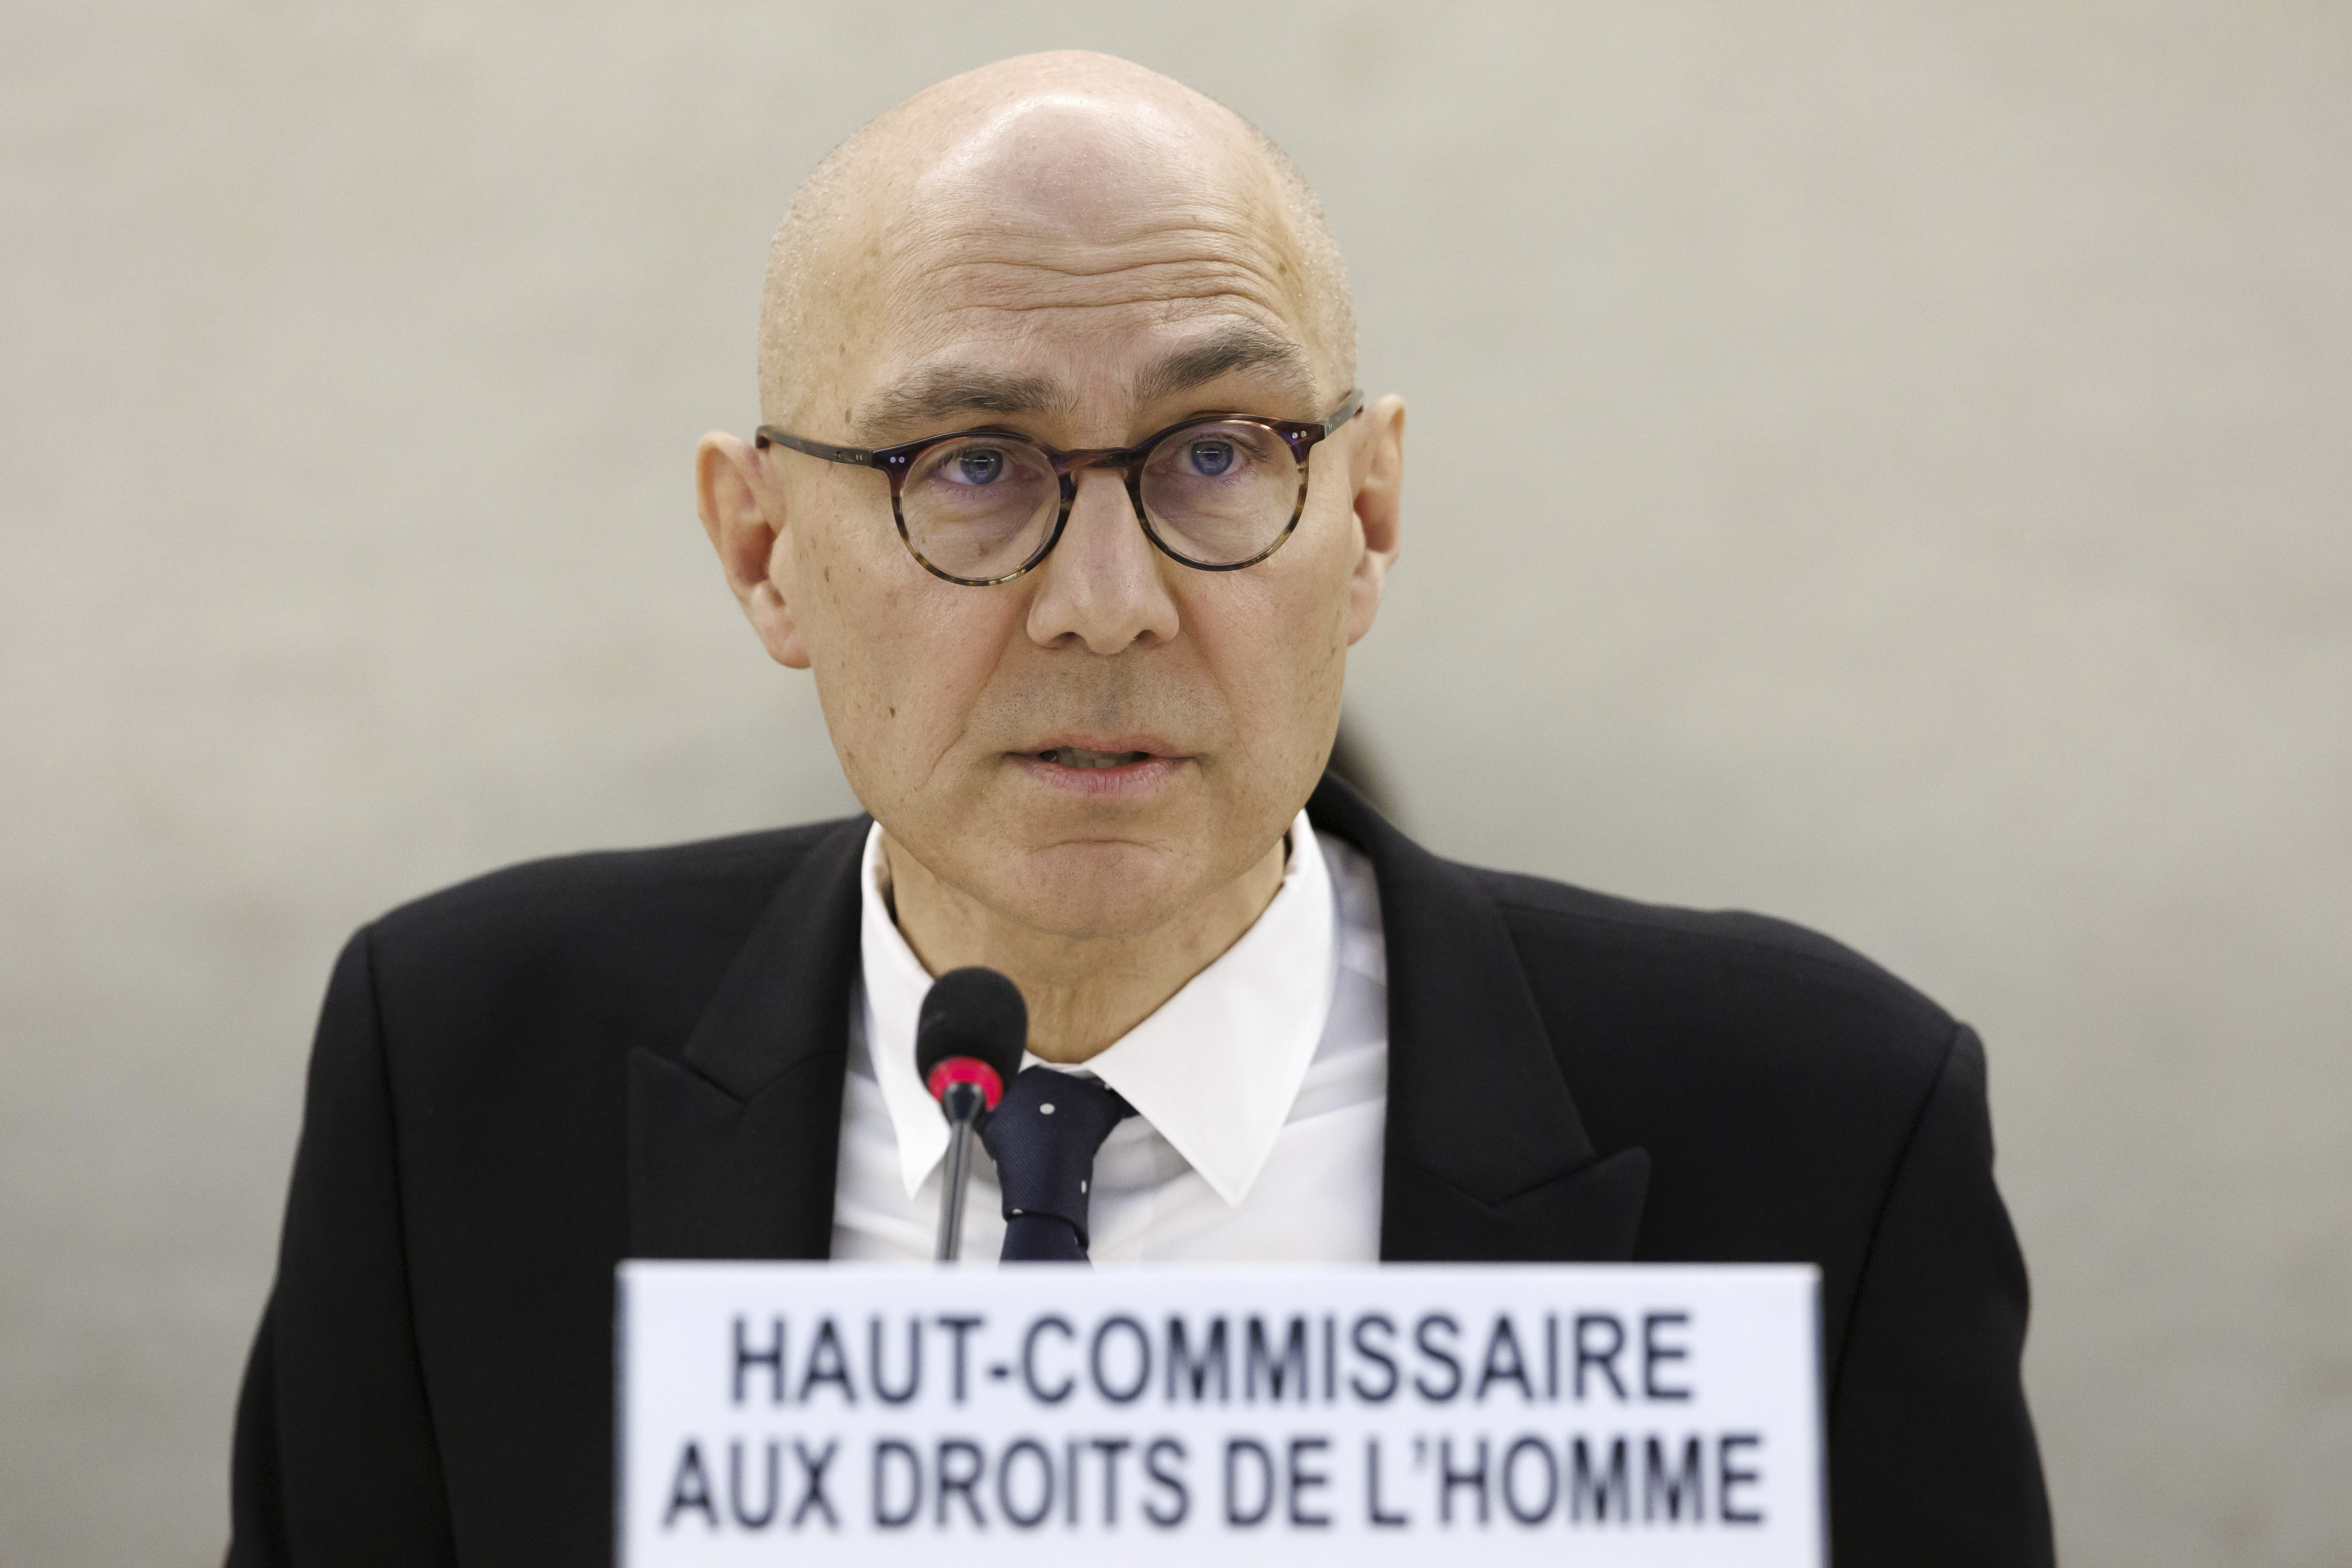 El Alto Comisionado de la ONU para los Derechos Humanos Volker Turk. (Salvatore Di Nolfi/Keystone via AP)